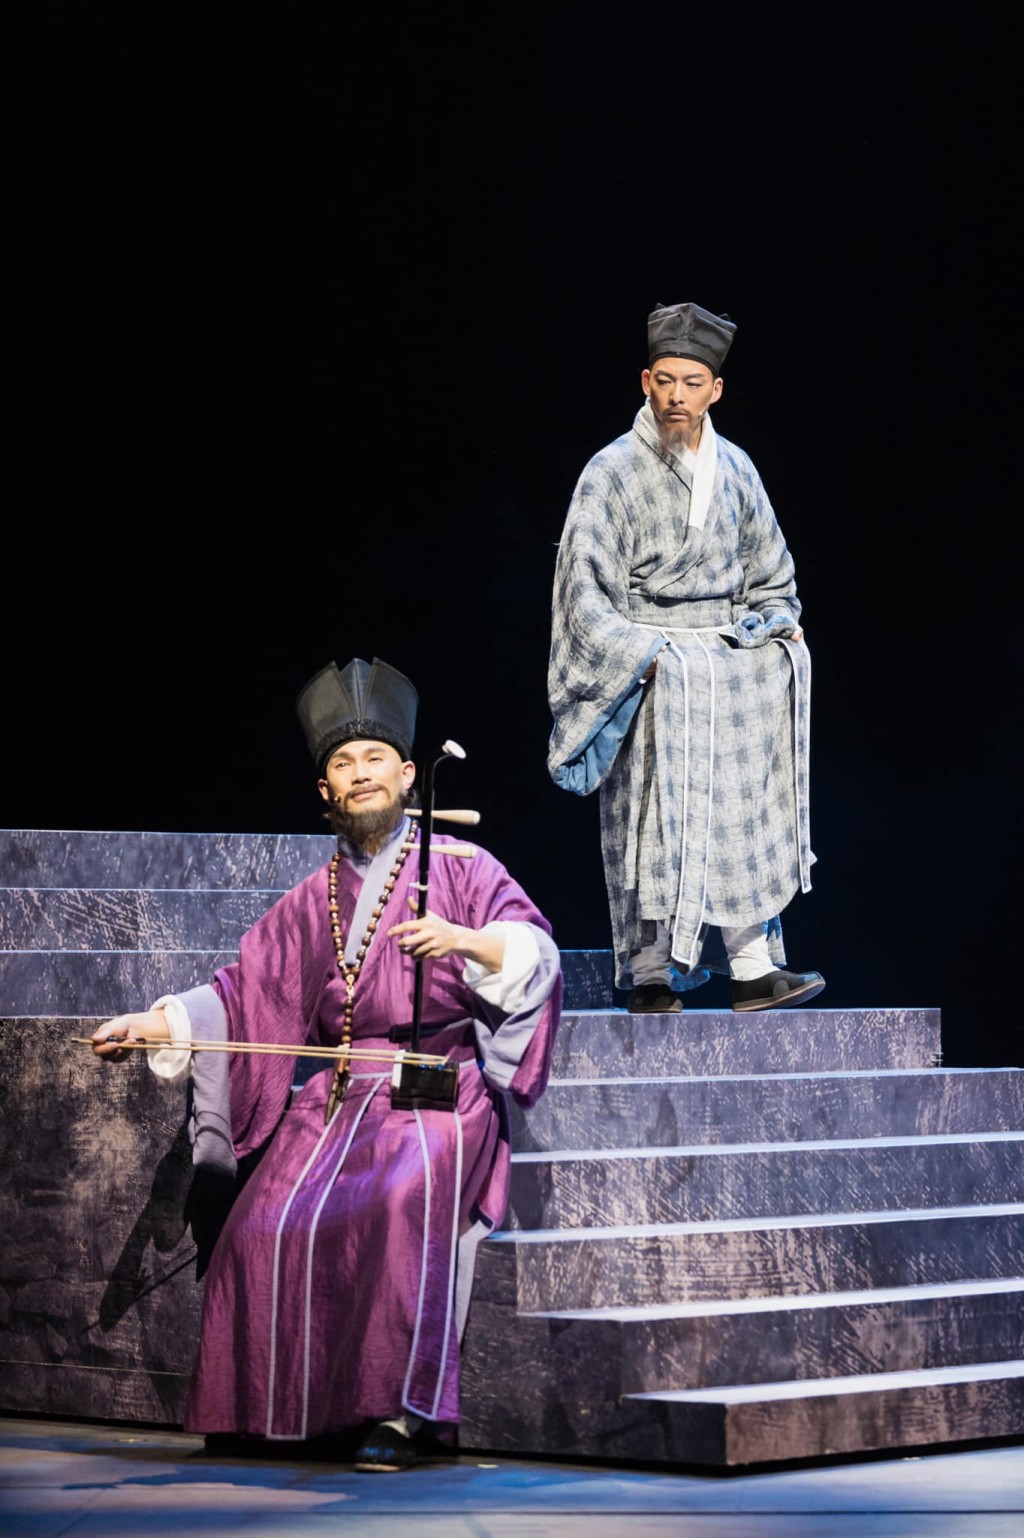 刘松仁担任策划、执导及创作的音乐剧《利玛窦》将于今年4月重演。